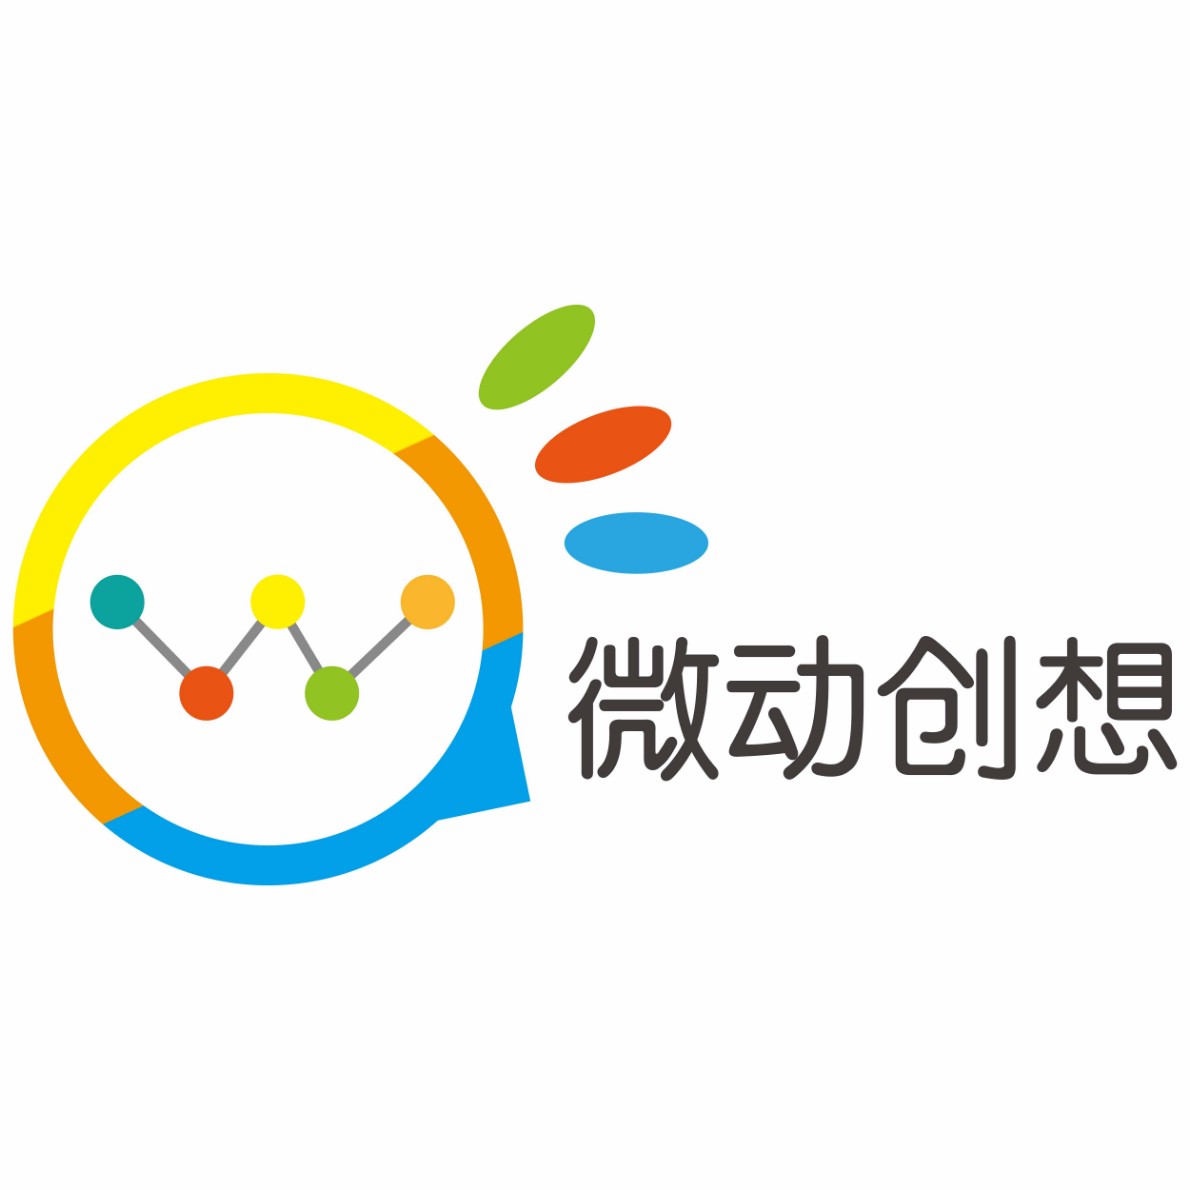 广州商场会员系统/物业管理系统/渠道二维码/选房系统/微信开发